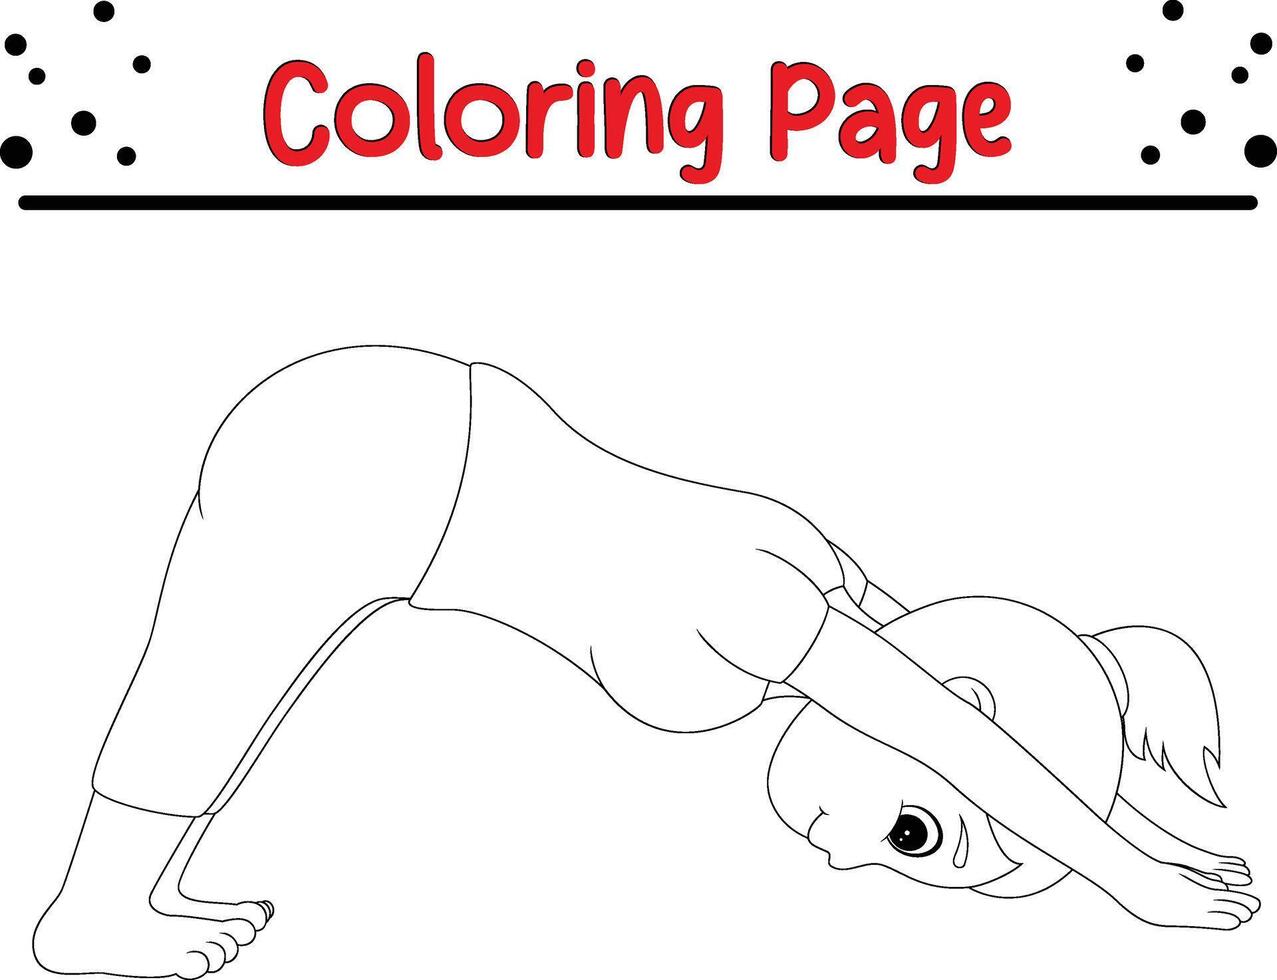 fille pratiquant yoga pose coloration livre page pour des gamins vecteur